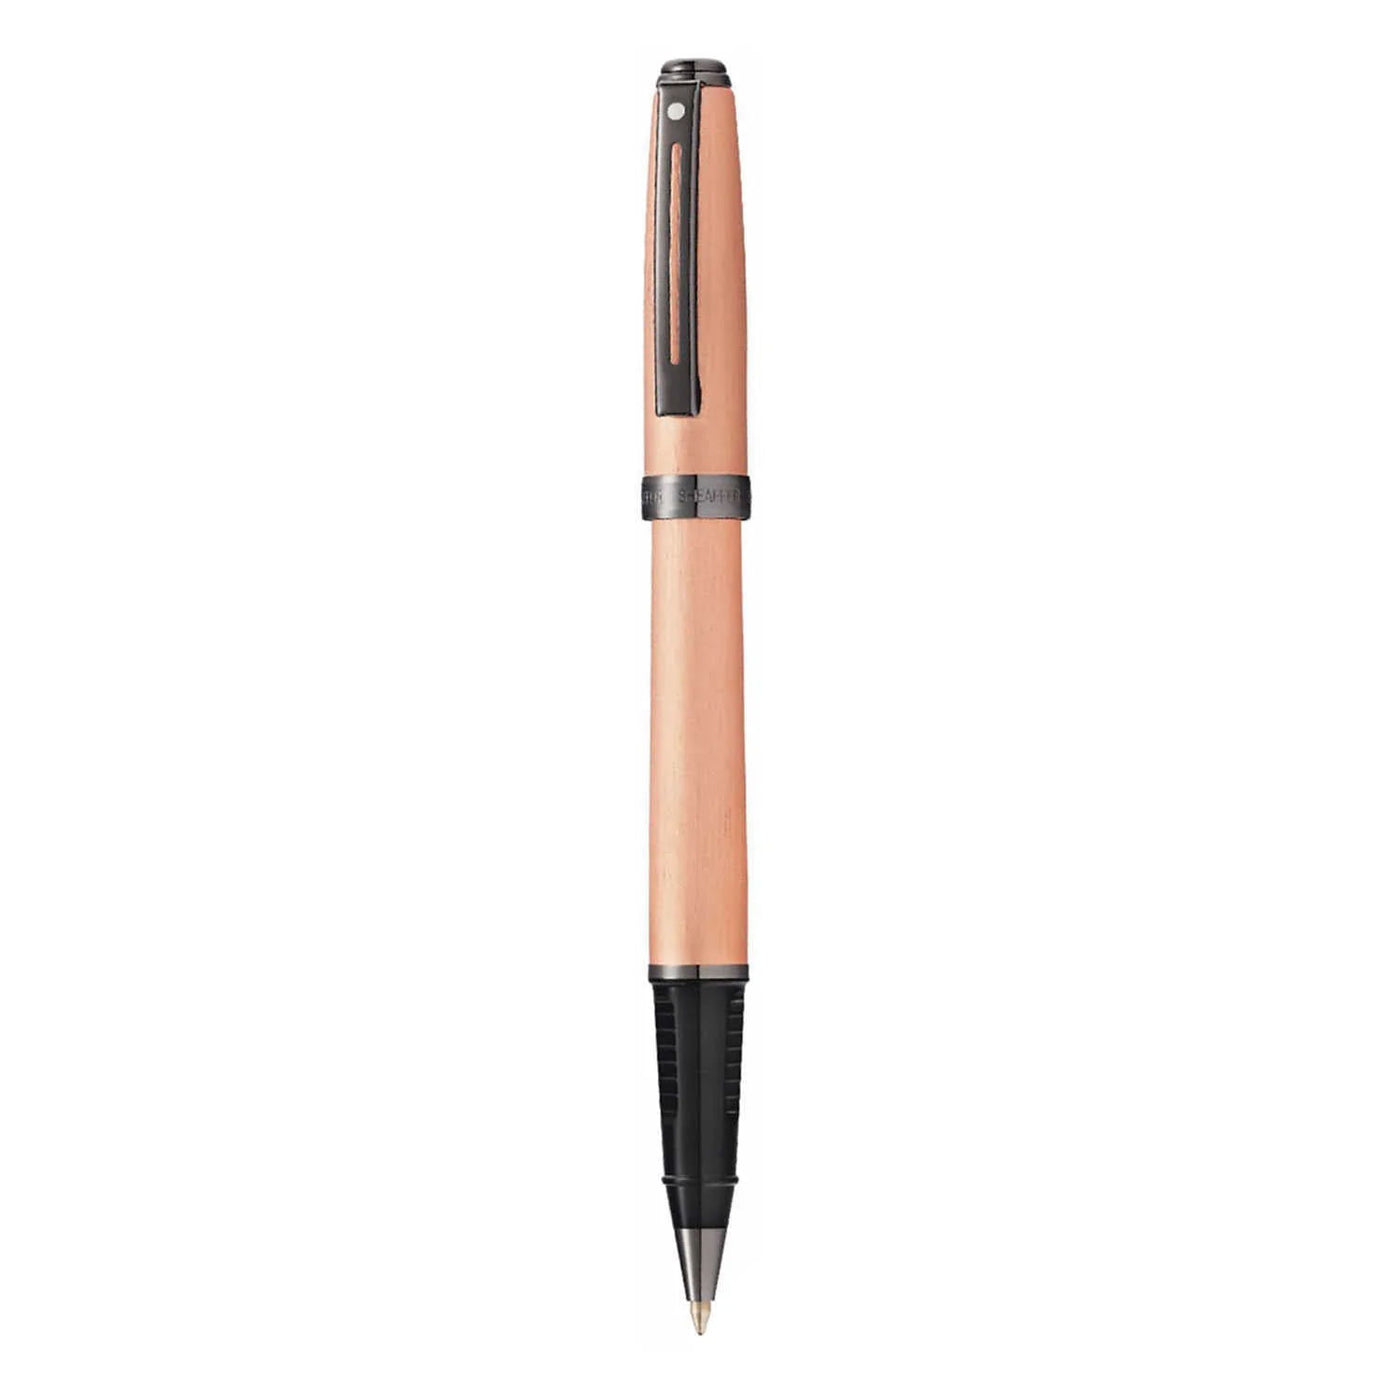 Sheaffer Prelude Roller Ball Pen - Brushed Copper PVD 2